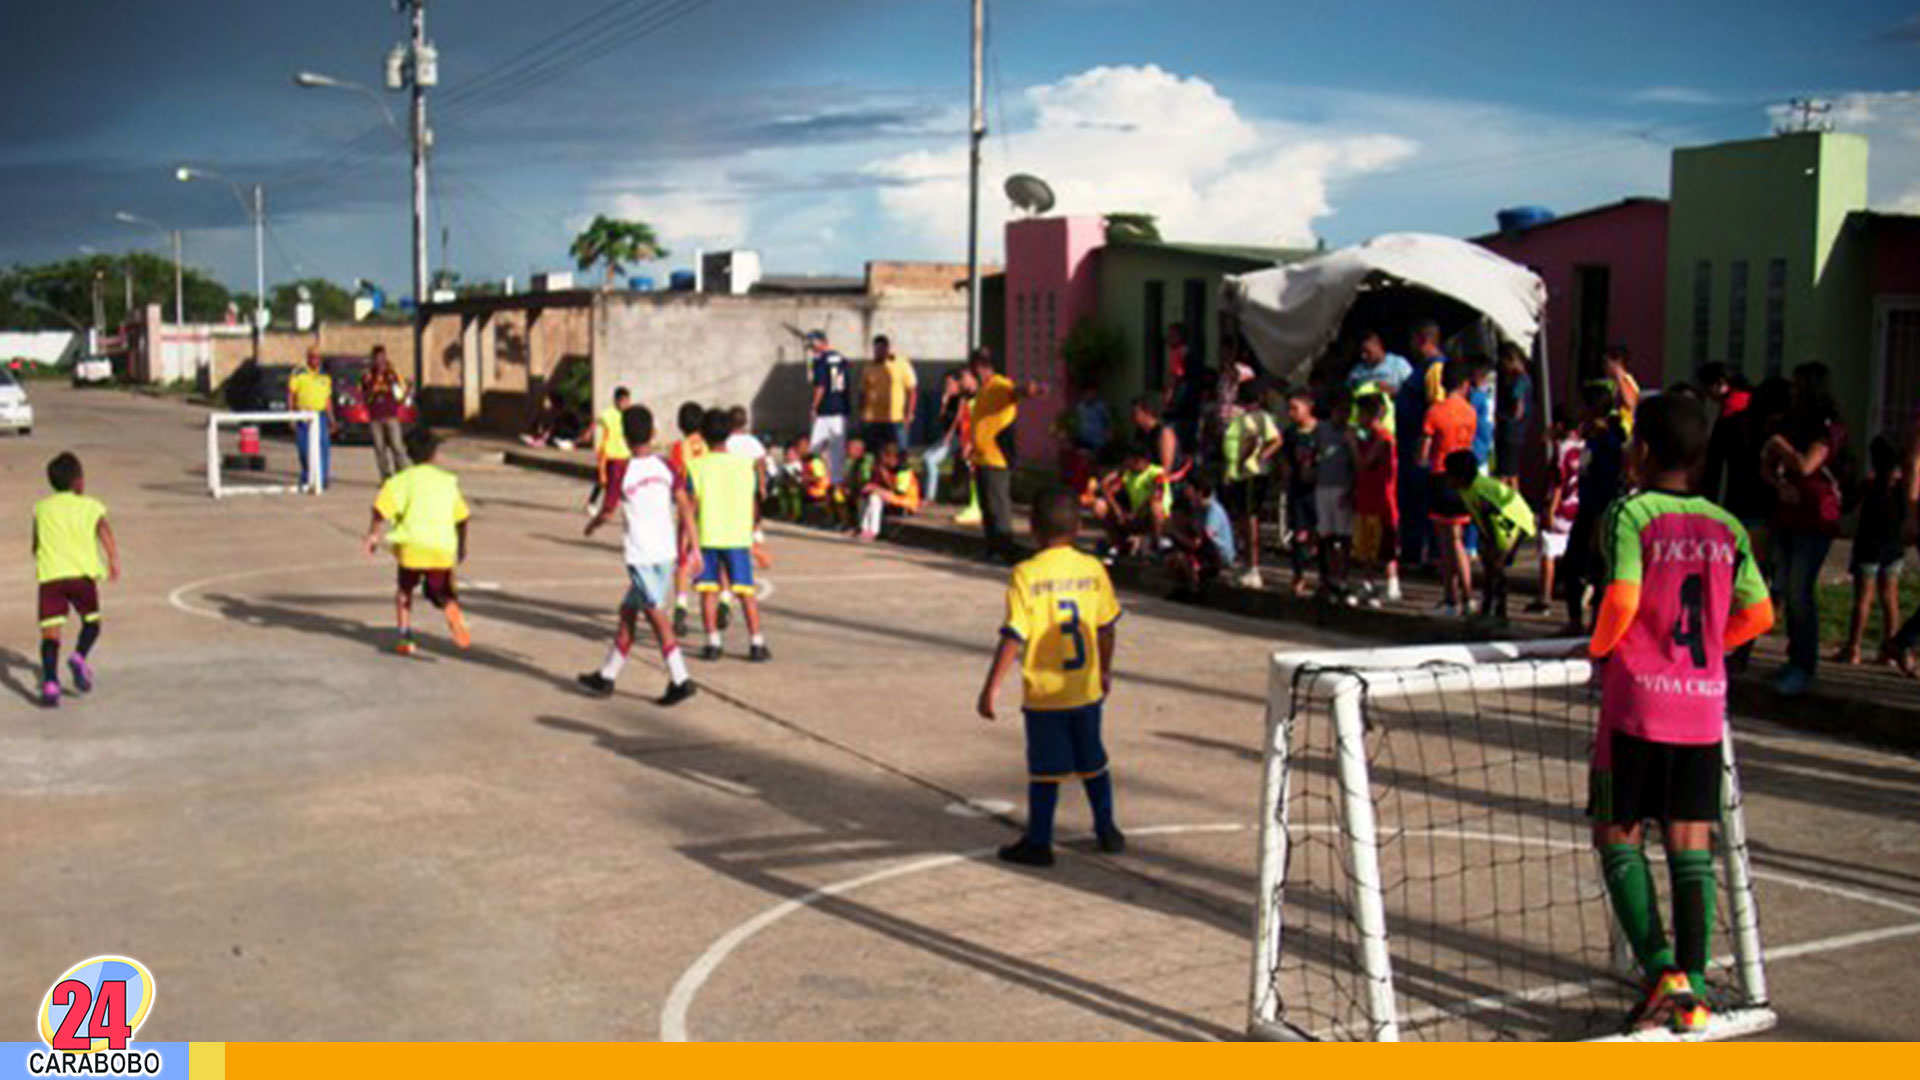 Futbolito en Venezuela – futbolito en Venezuela